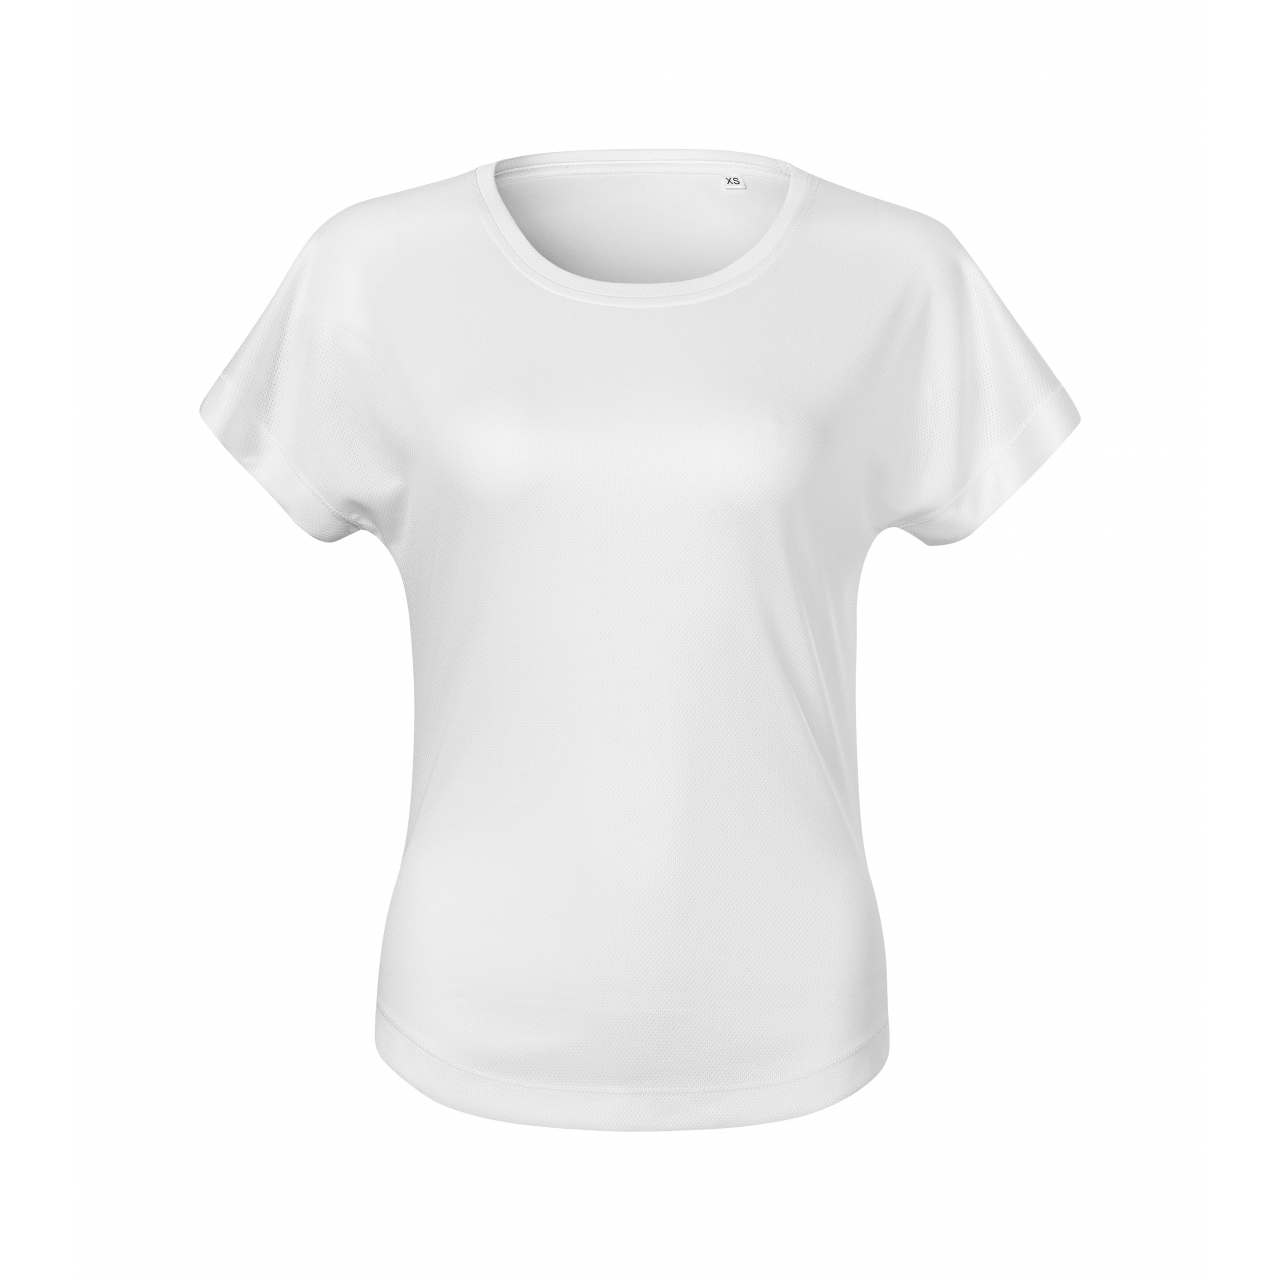 Tričko dámské Malfini Chance - bílé, XL